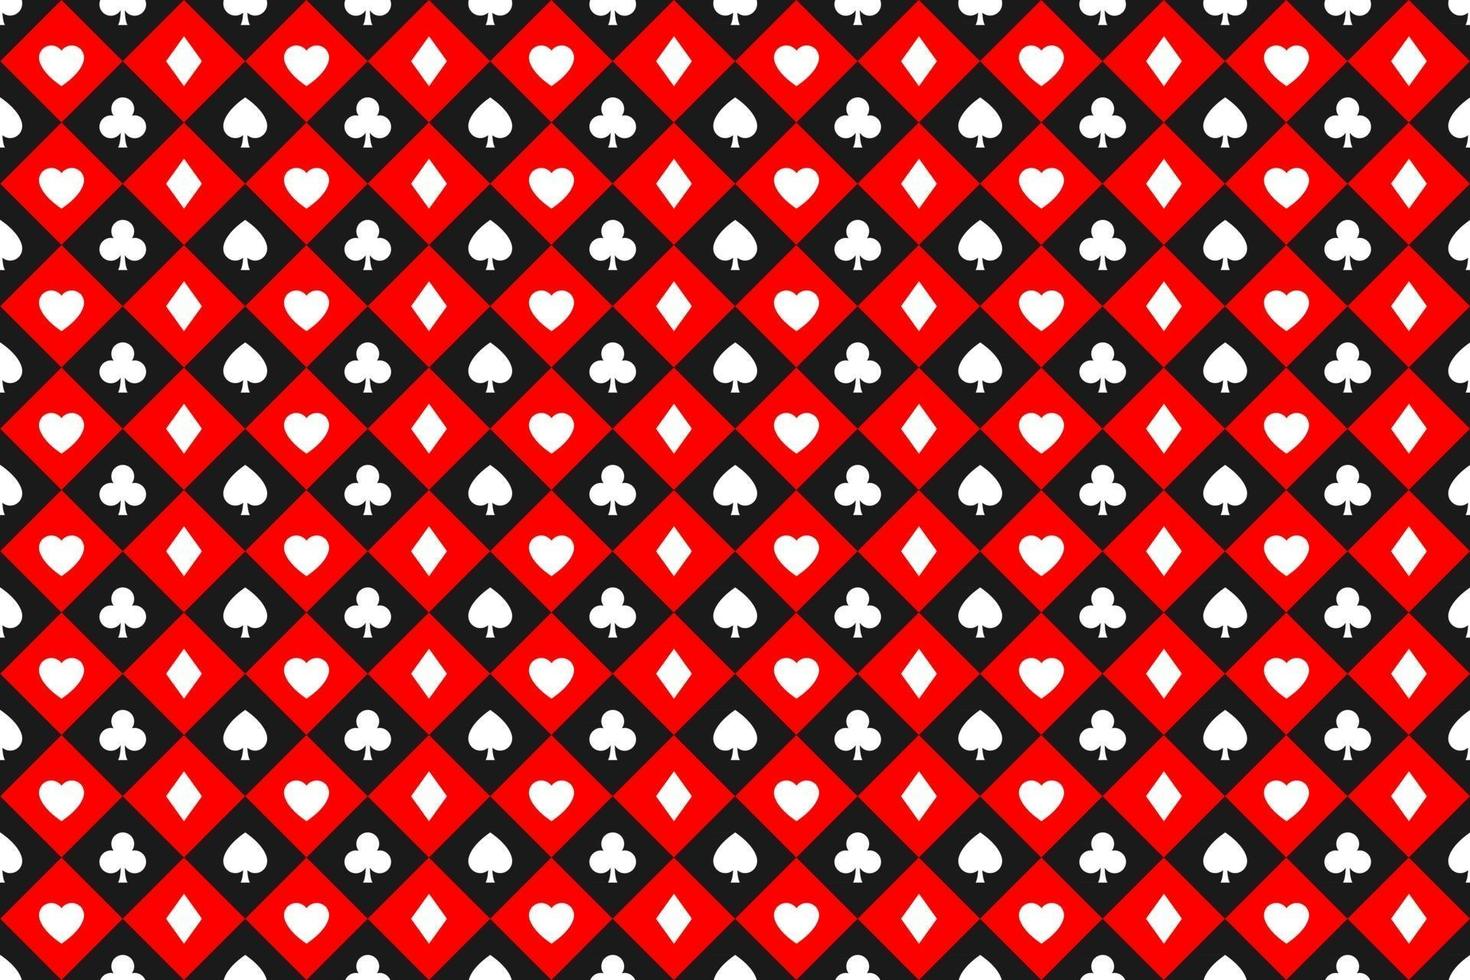 sfondo di poker vettoriale astratto senza soluzione di continuità con segni di carte da gioco simboli bianchi quadrati su quadrati rossi e neri simboli del casinò